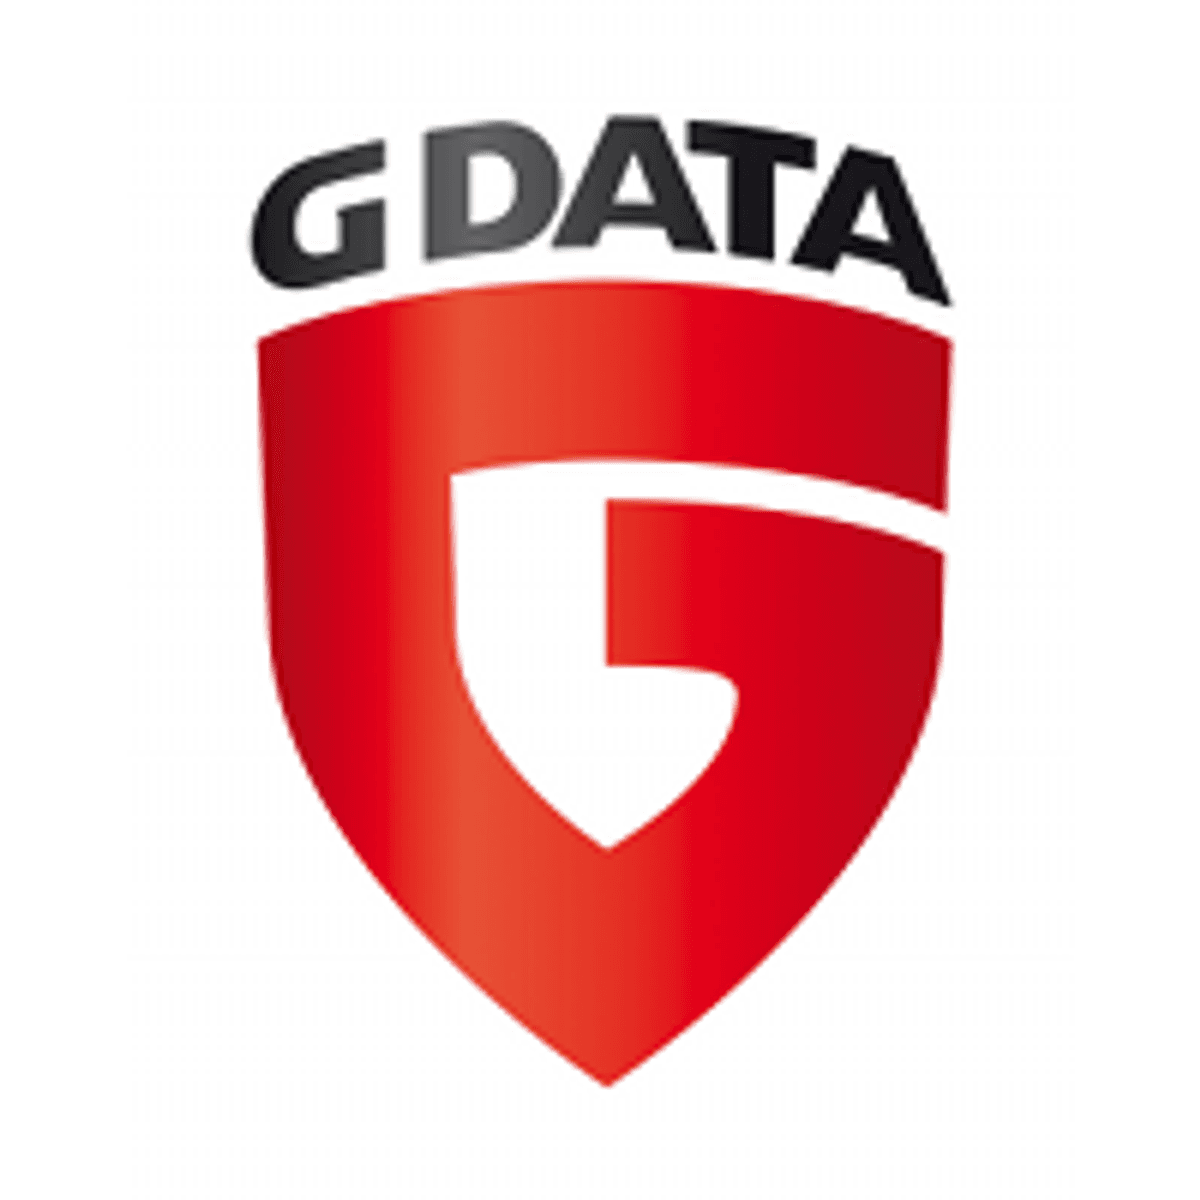 G DATA wil cyberbewustzijn verhogen met Cyber Defense Academy image